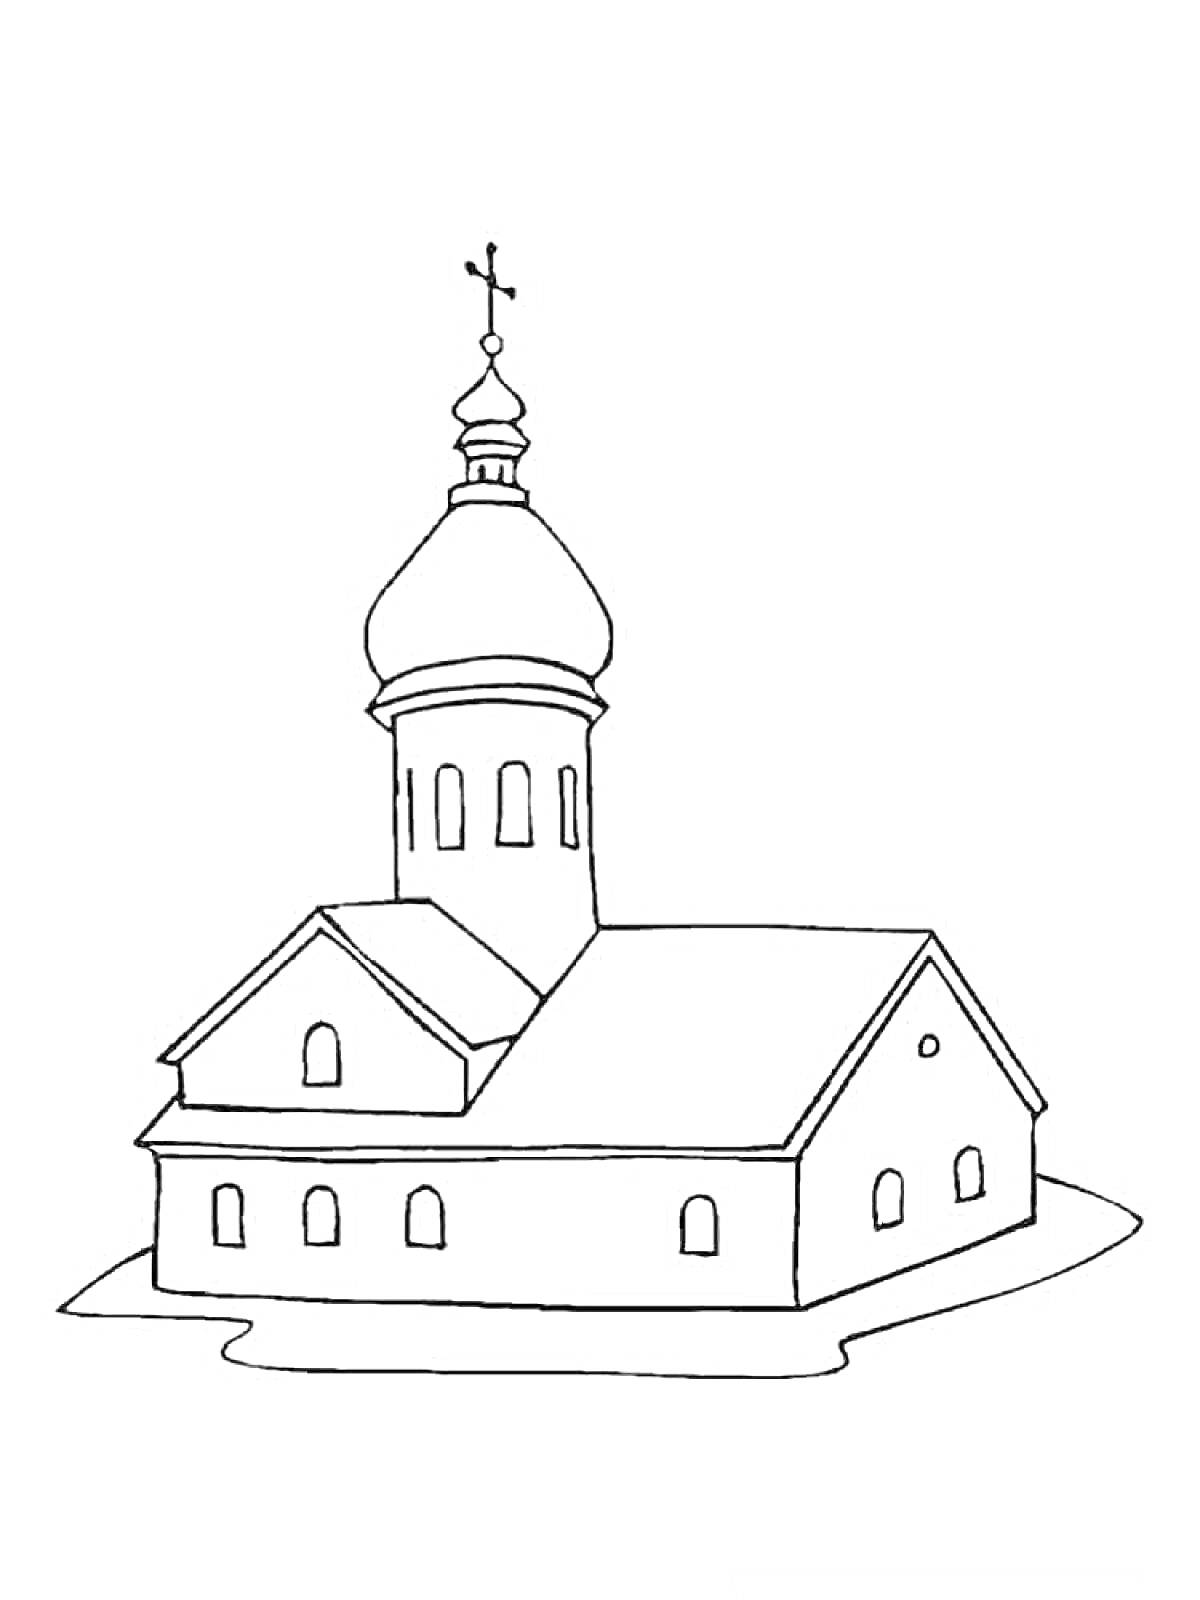 Раскраска Храм с куполом и крестом на вершине, окнами, дверьми и лестницей